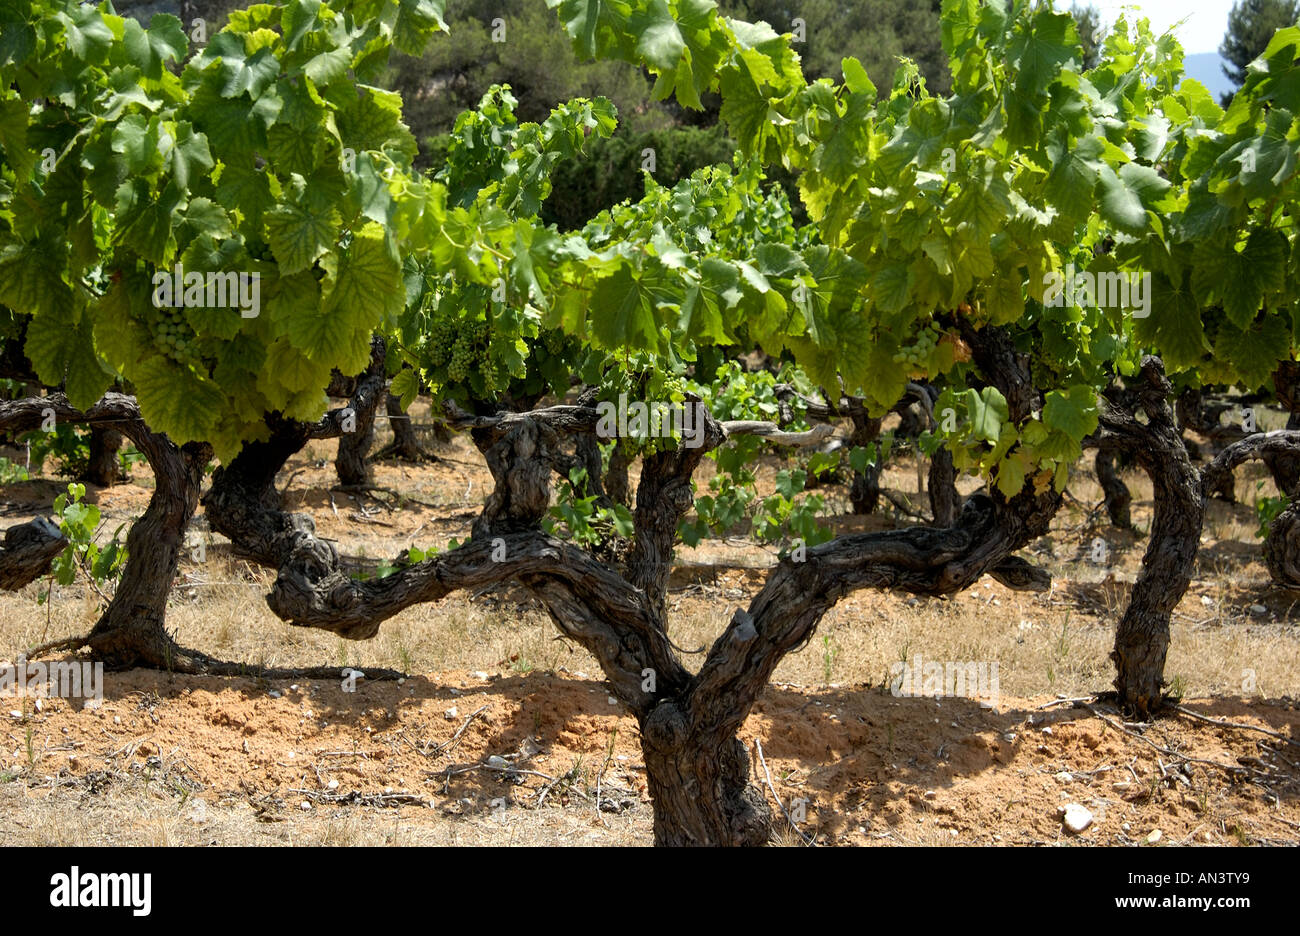 La vigne, Cotes du Rhone, France, Europe Banque D'Images